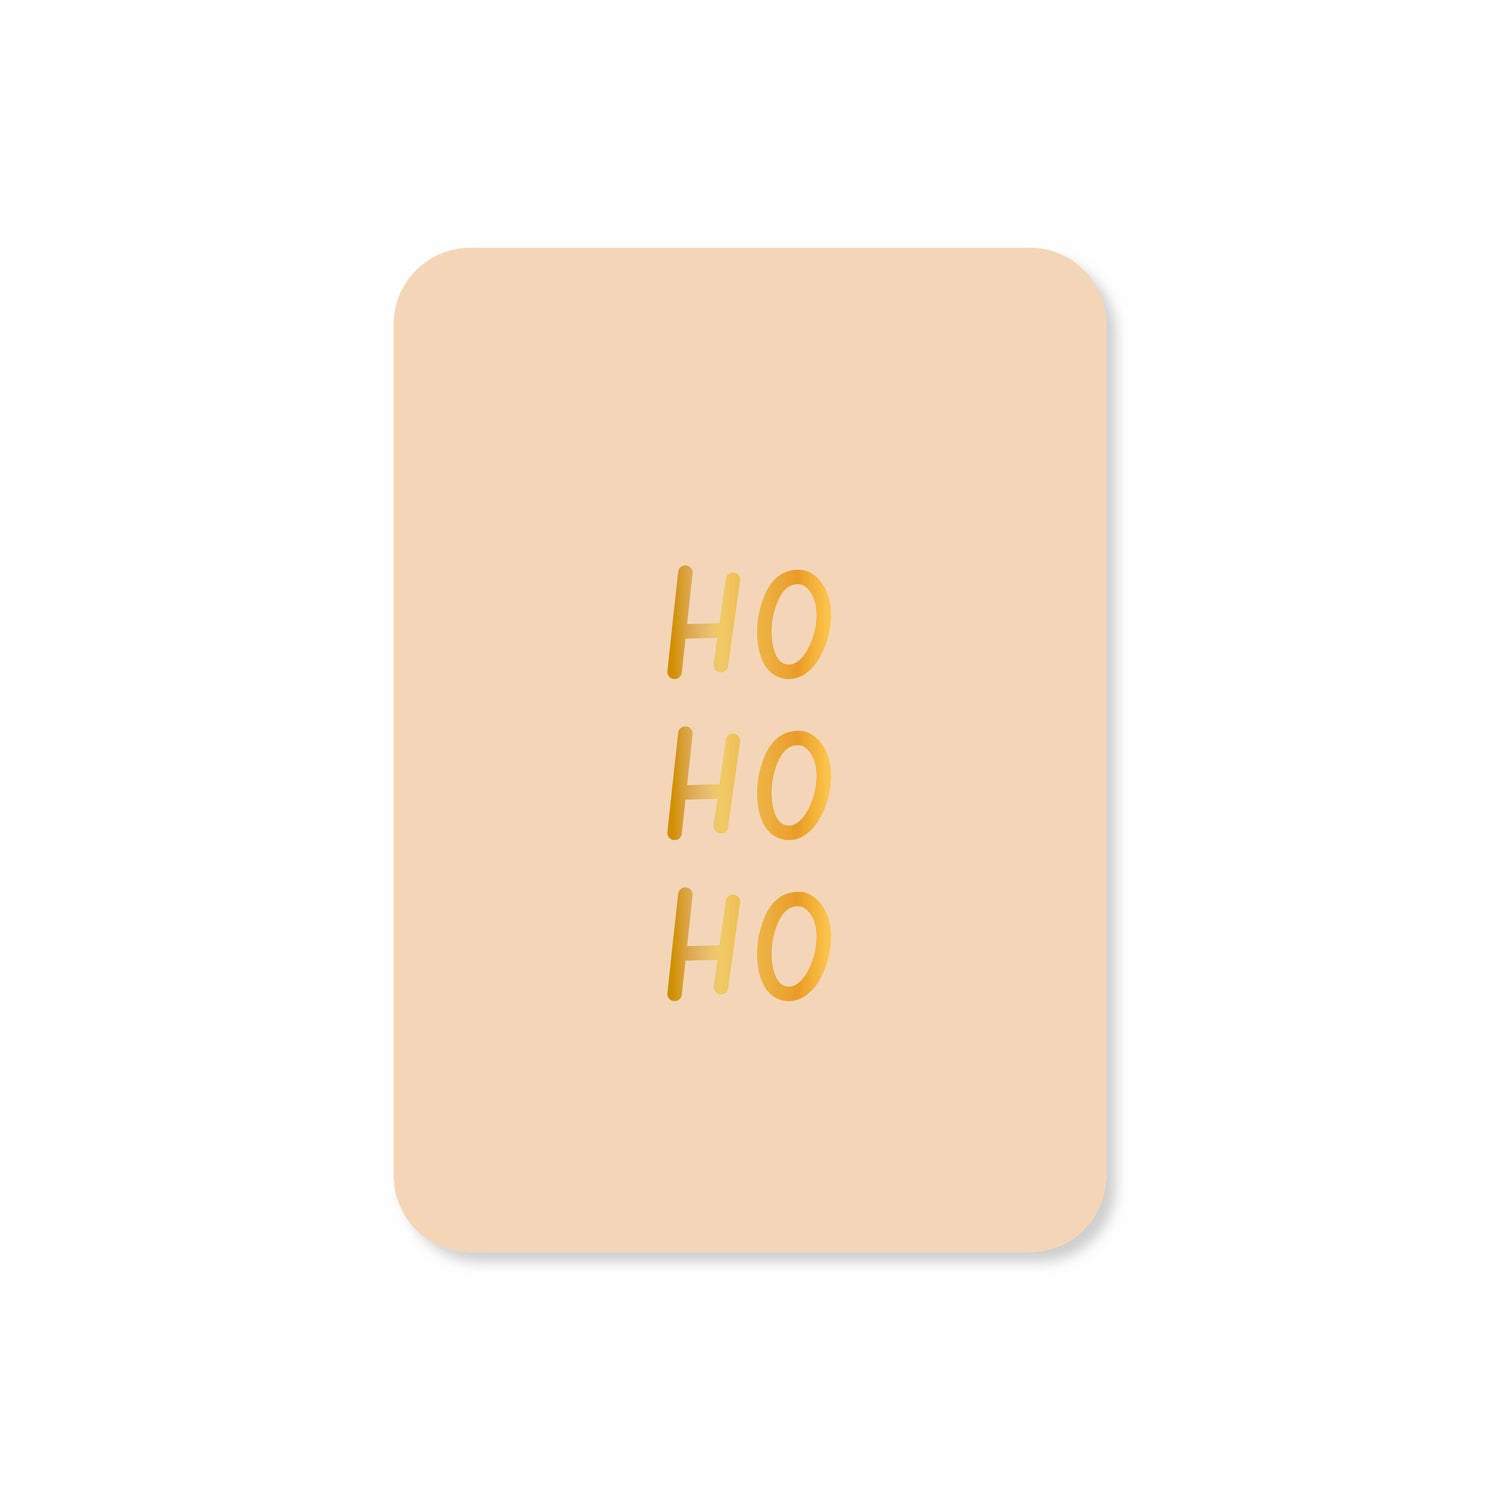 Minikaart Ho ho ho (met goudfolie)